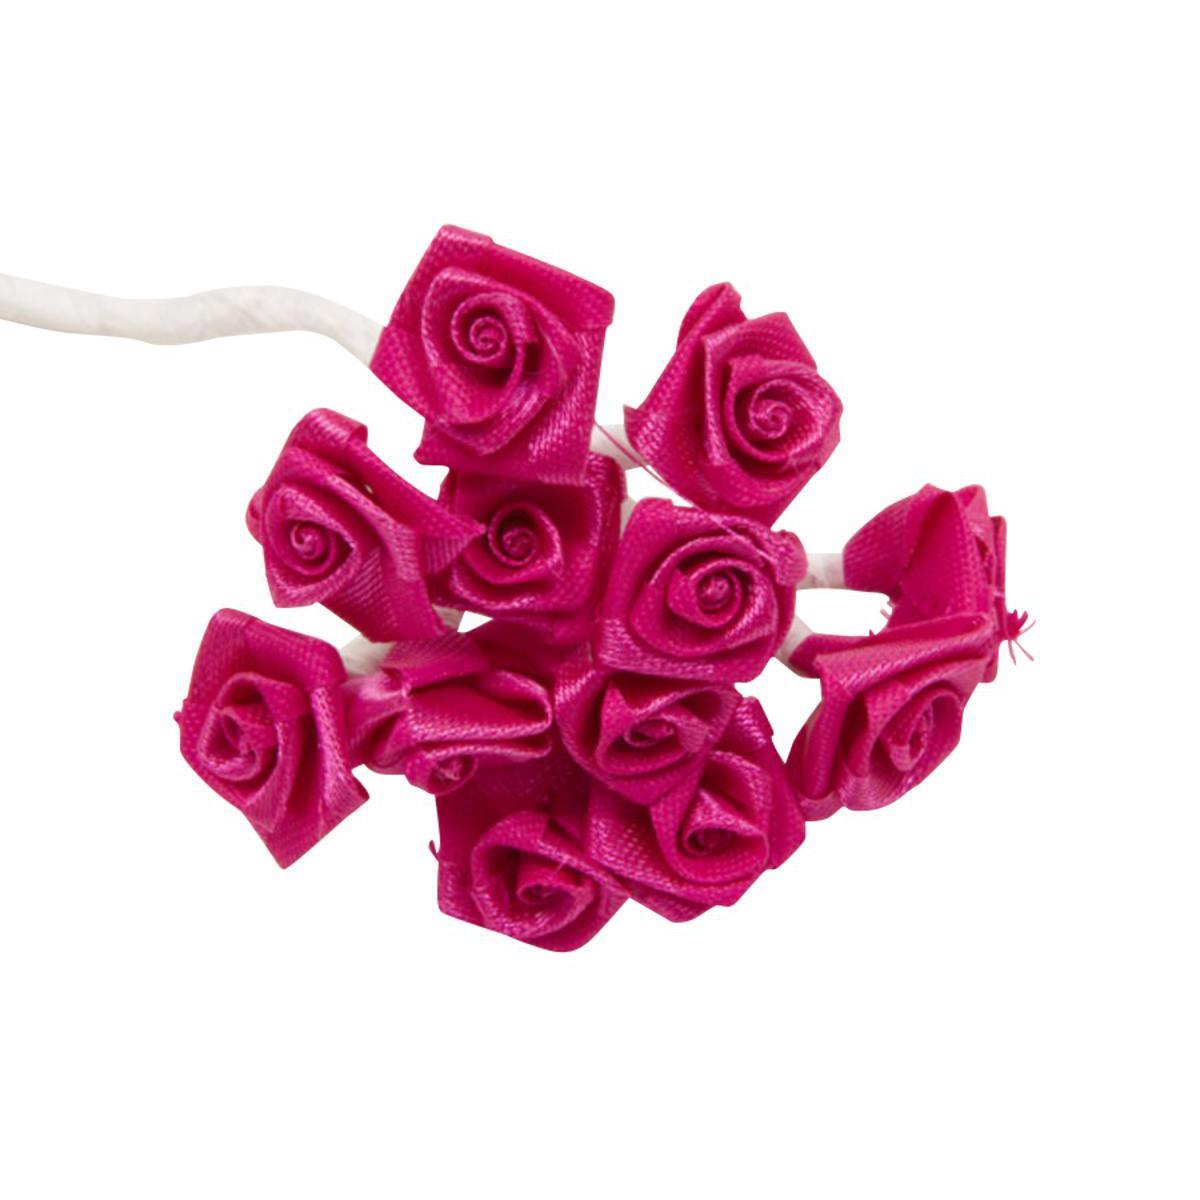 Sachet de 72 mini rosettes - Polyester - Diamètre 1,5 cm - Rose fushia